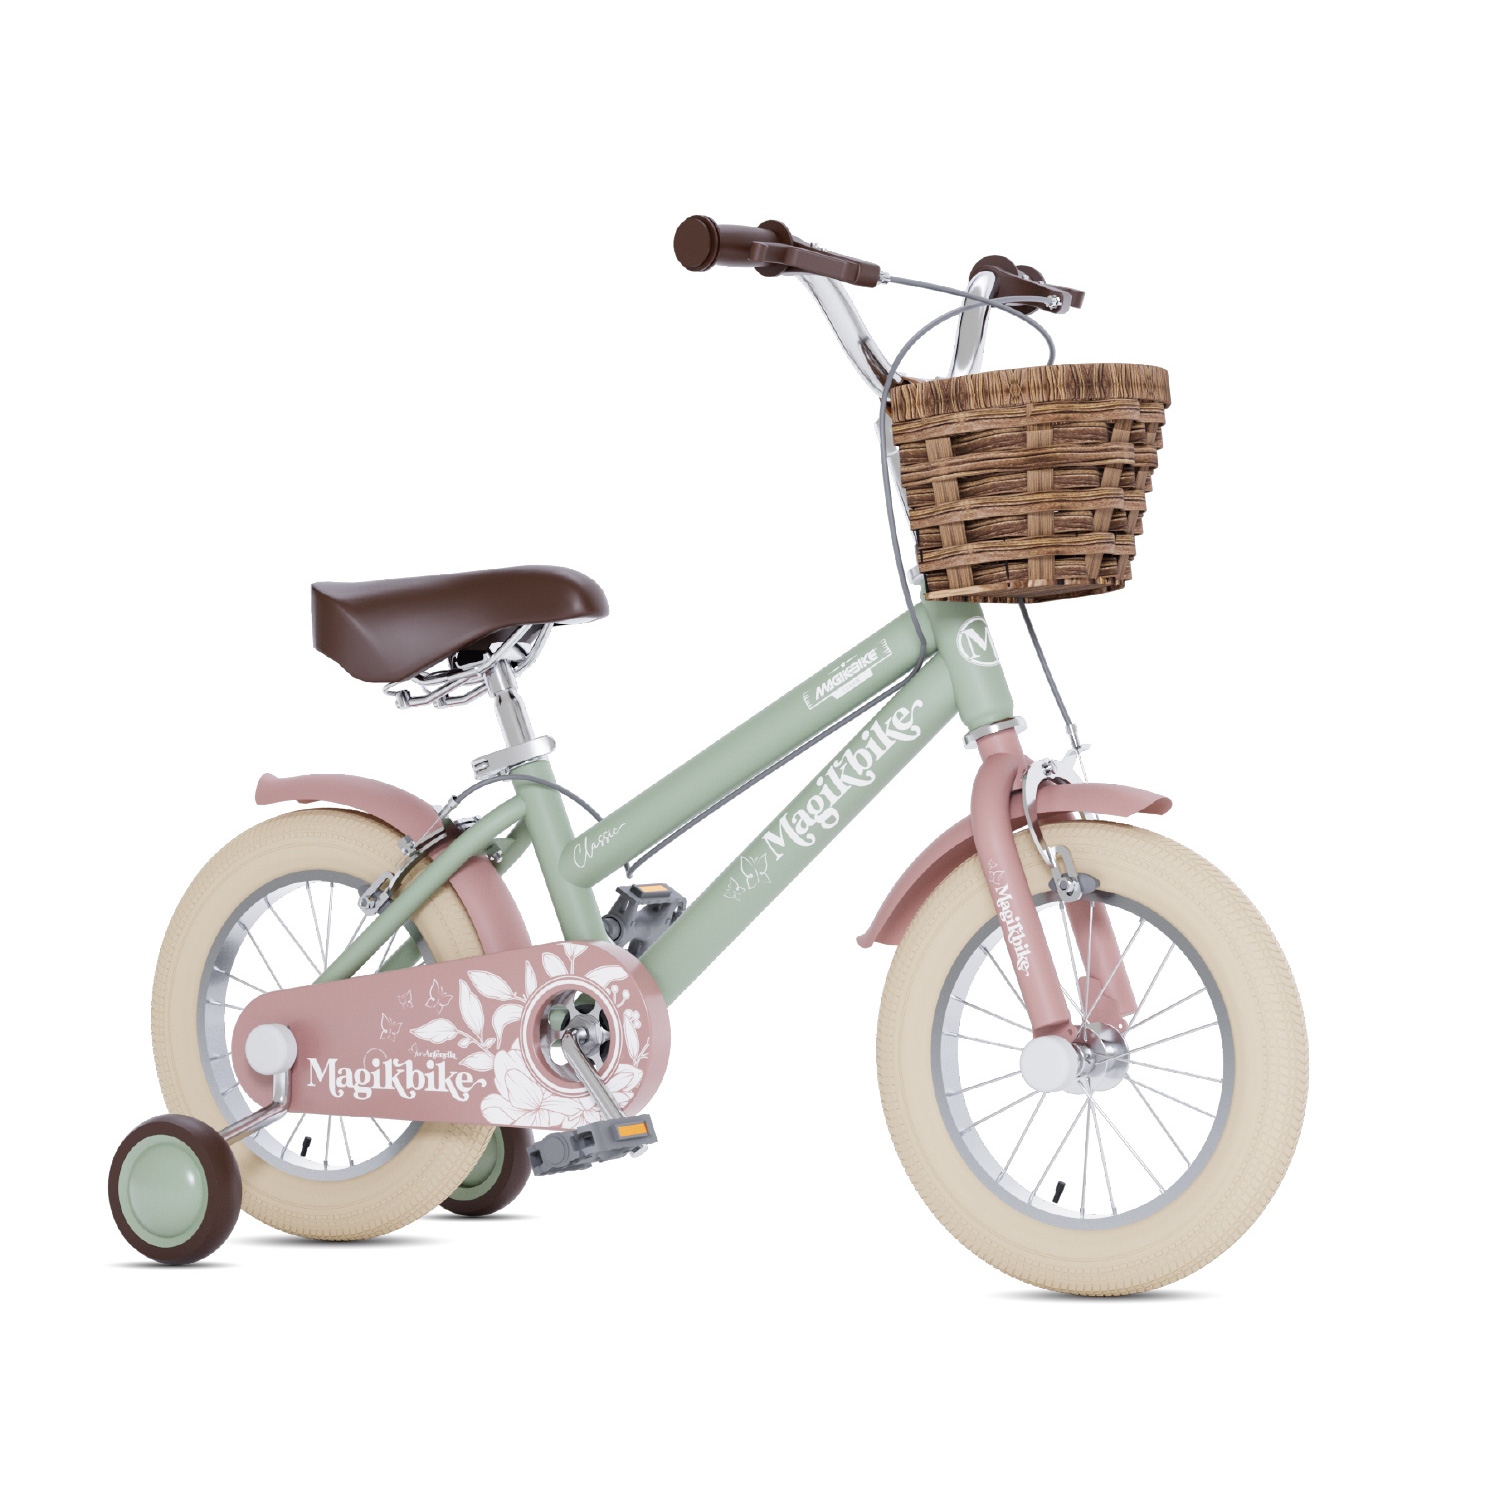 Bicicleta Niños 16 Pulgadas Magikbike Antonella 5-7 Años - verde - 